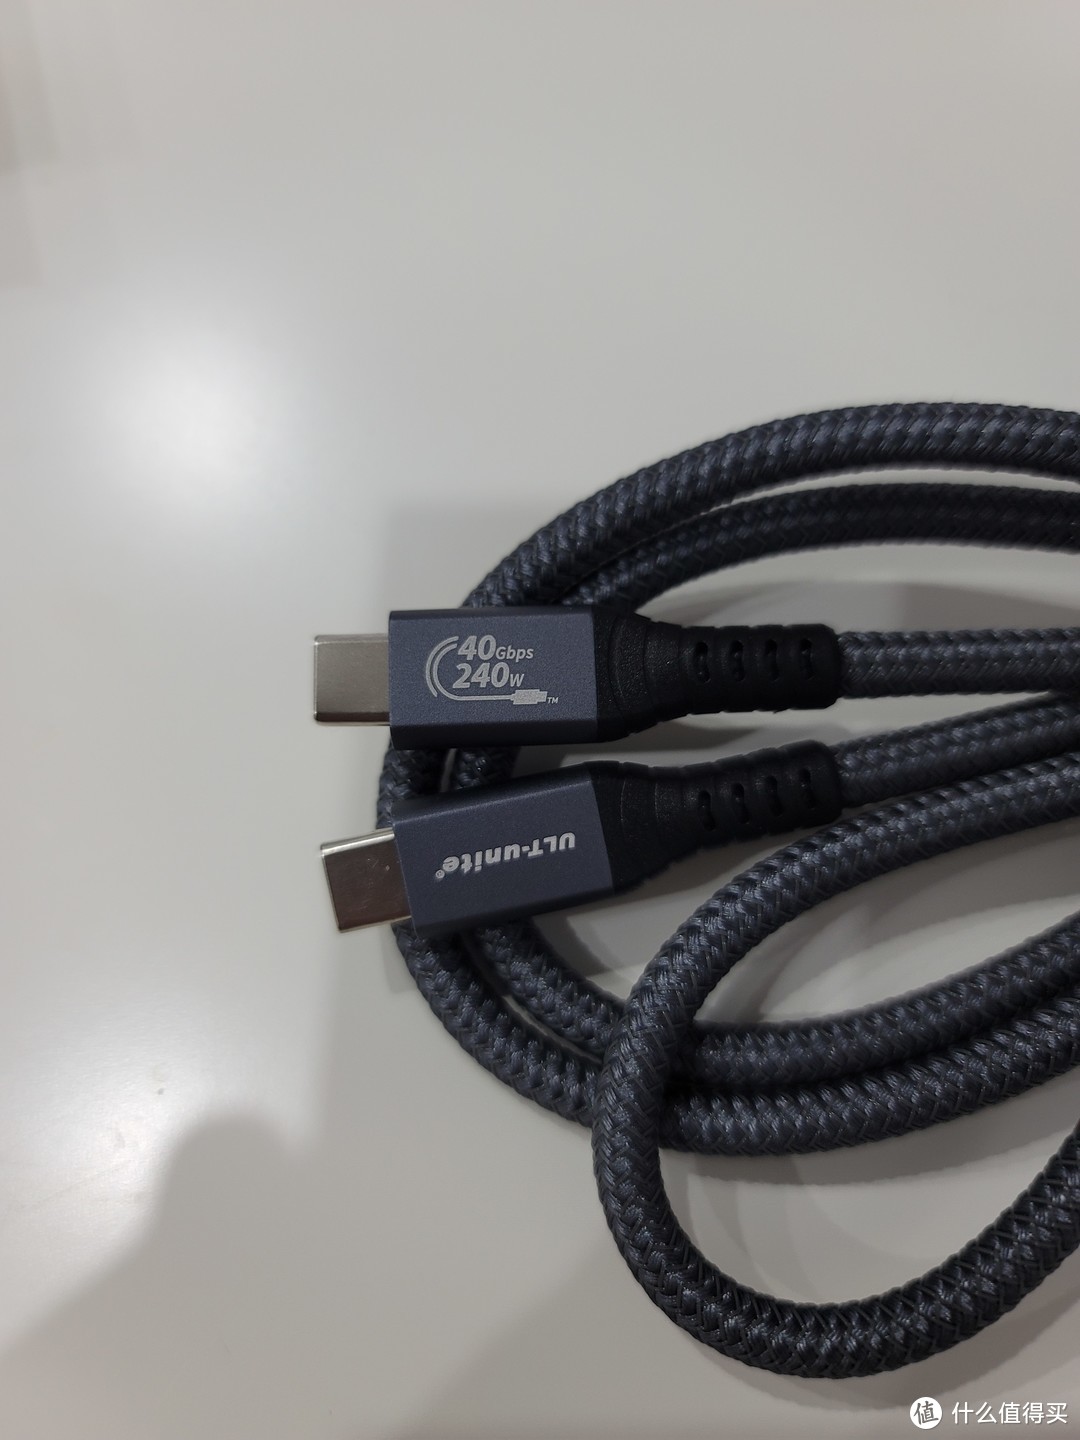 功能最全的USB4 TYPE-C线缆